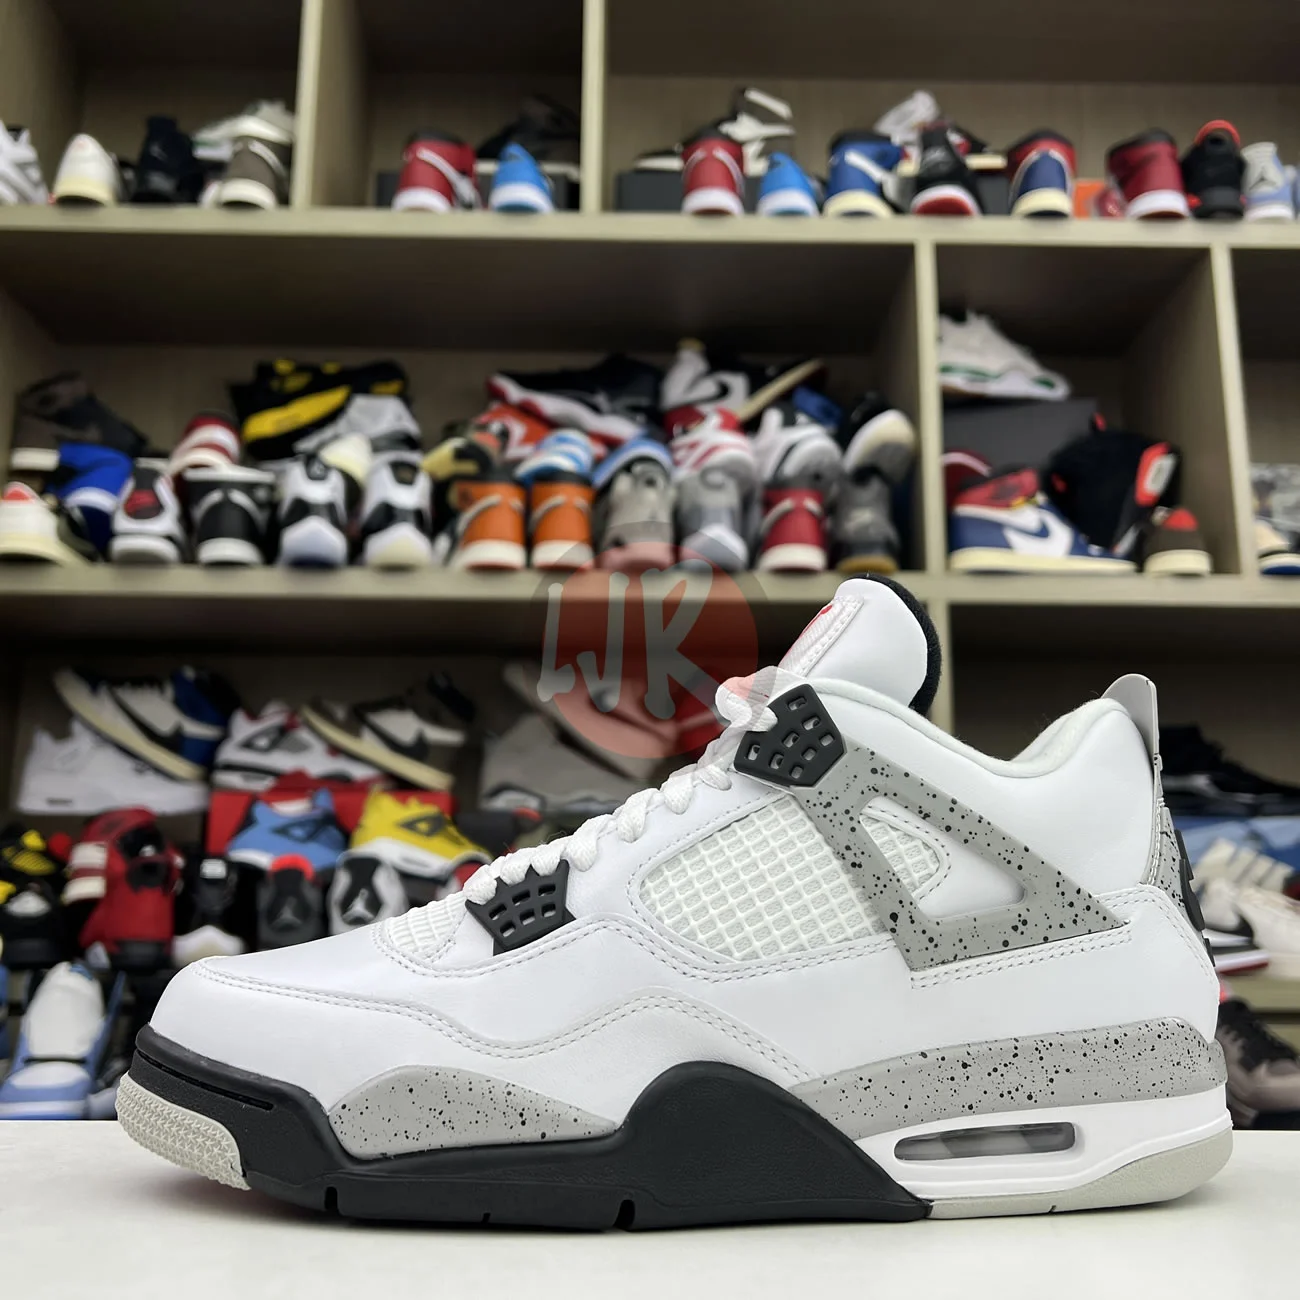 Air Jordan 4 Retro White Cement 2016 840606 192 Ljr Sneakers (13) - www.ljrofficial.com